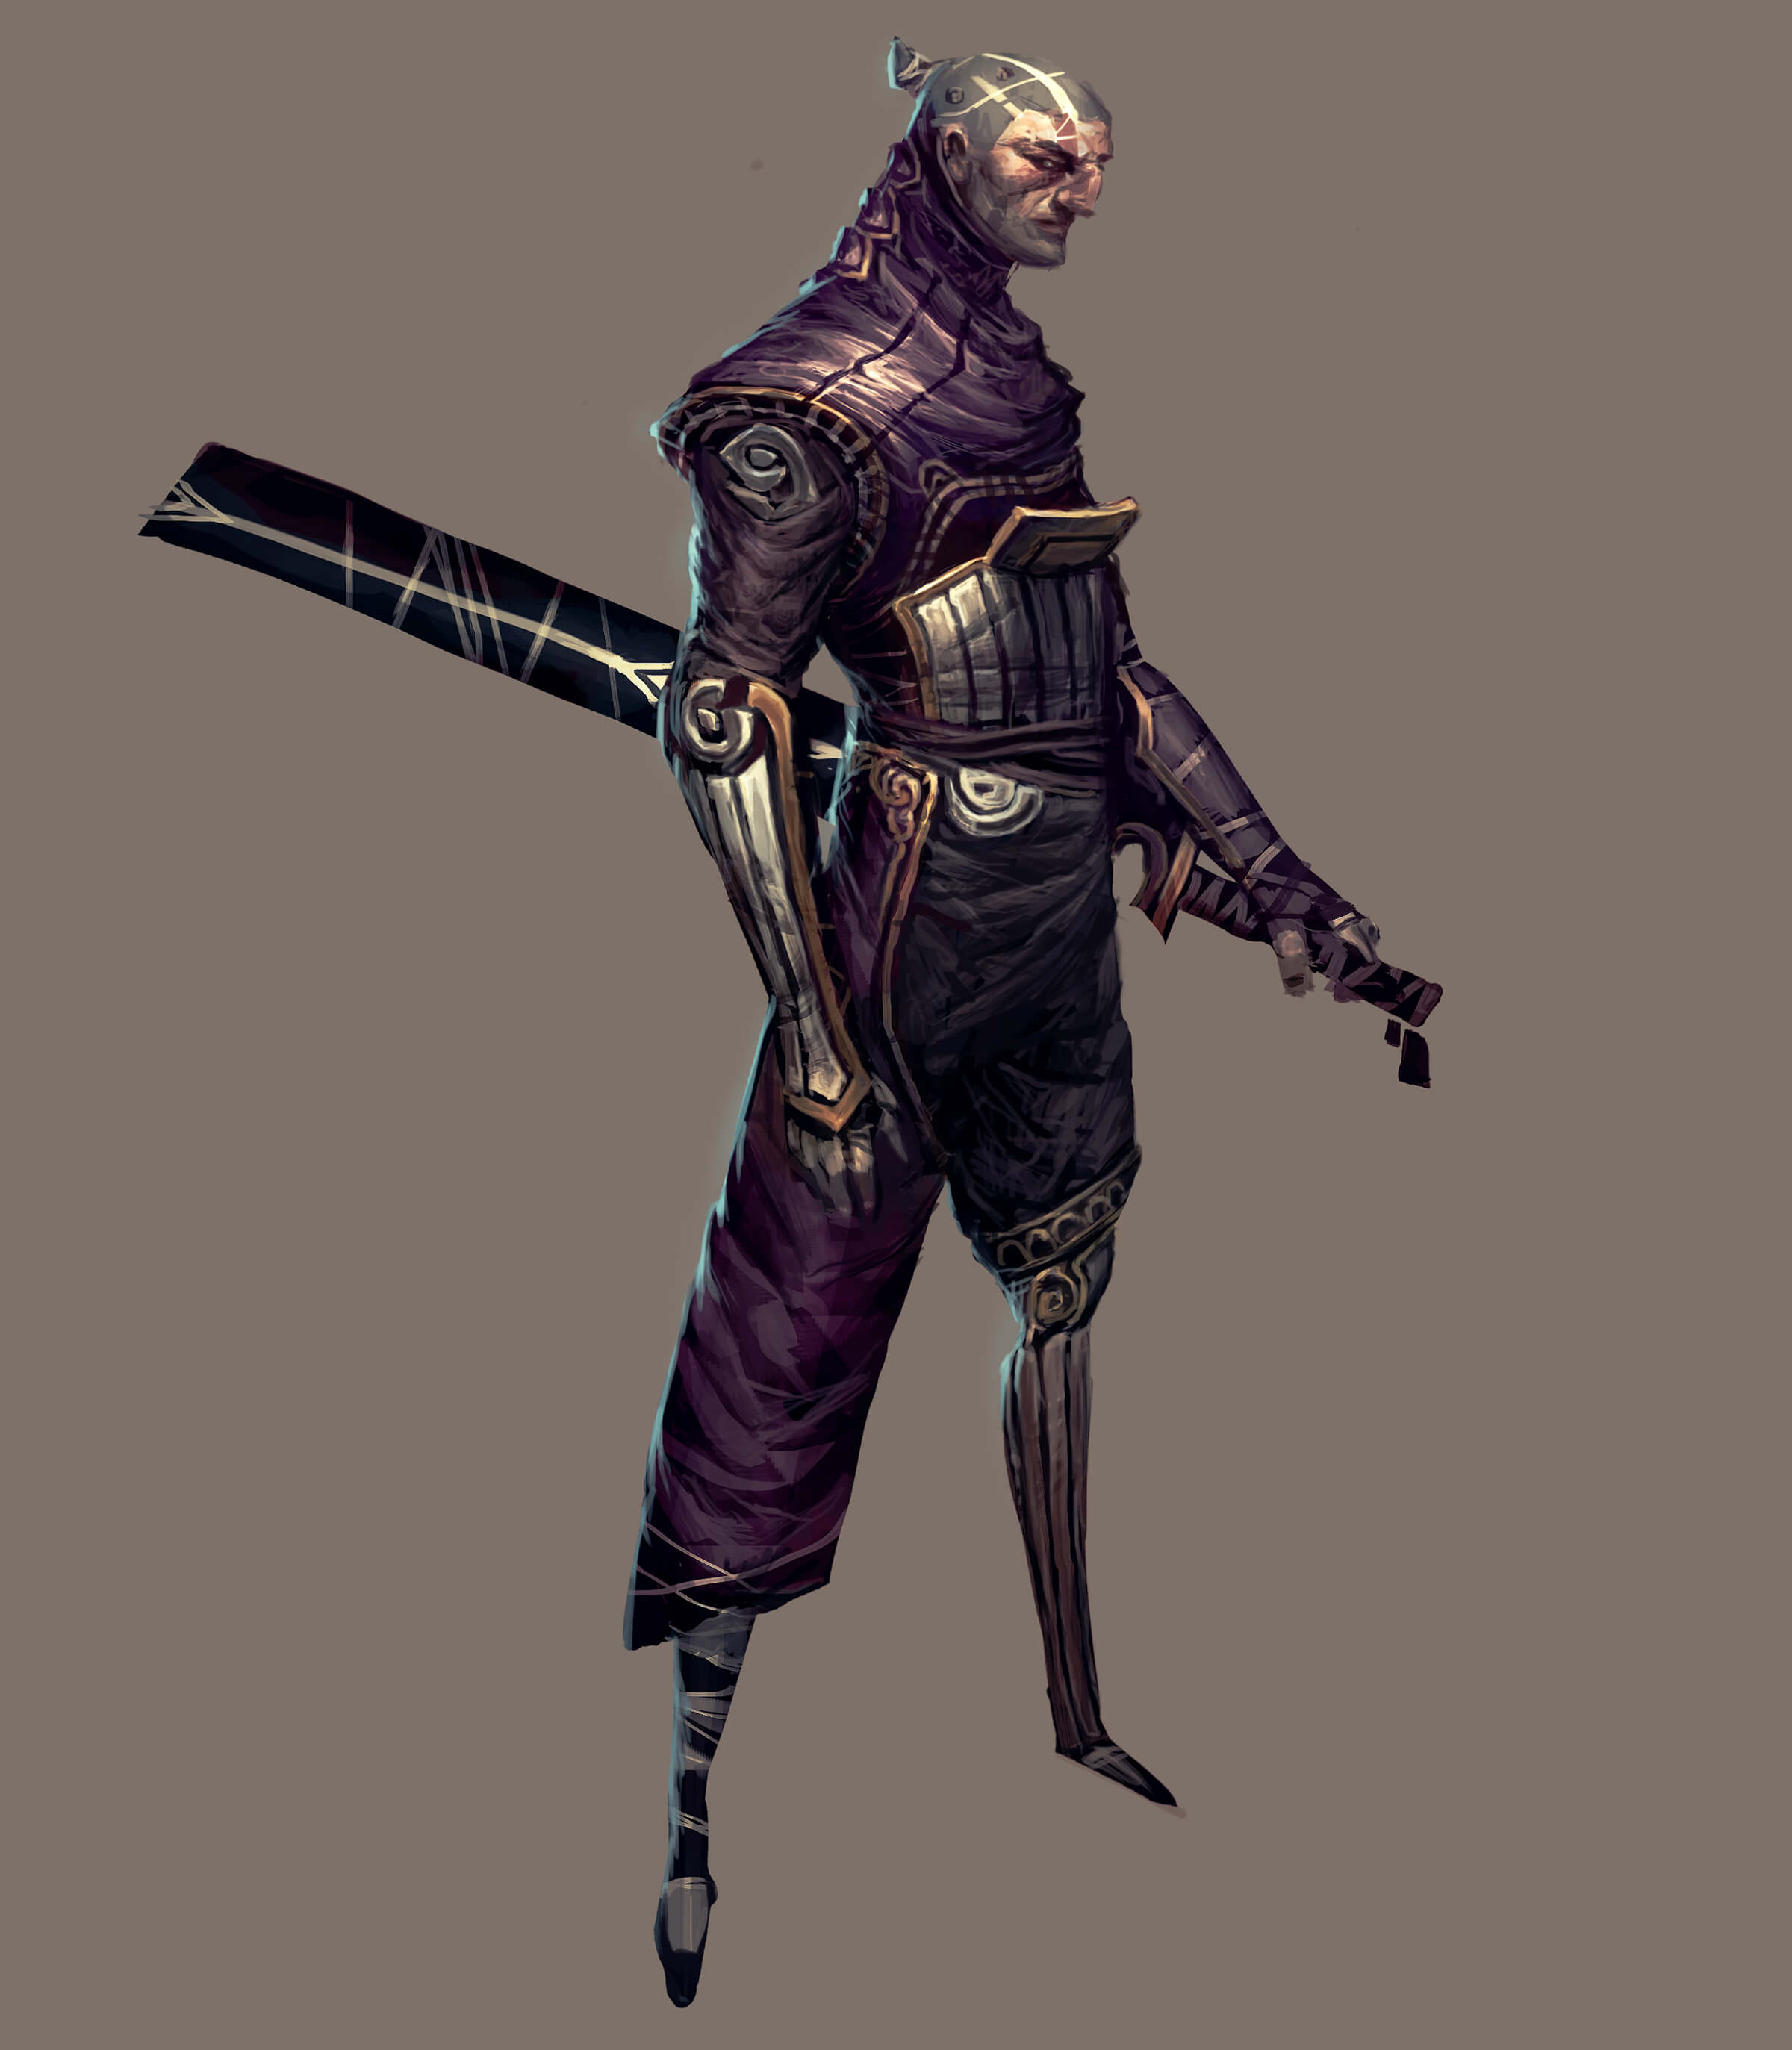 Un guerrero con un ornamentado uniforme púrpura y plateado visto de lado con una espada envainada en la cadera.